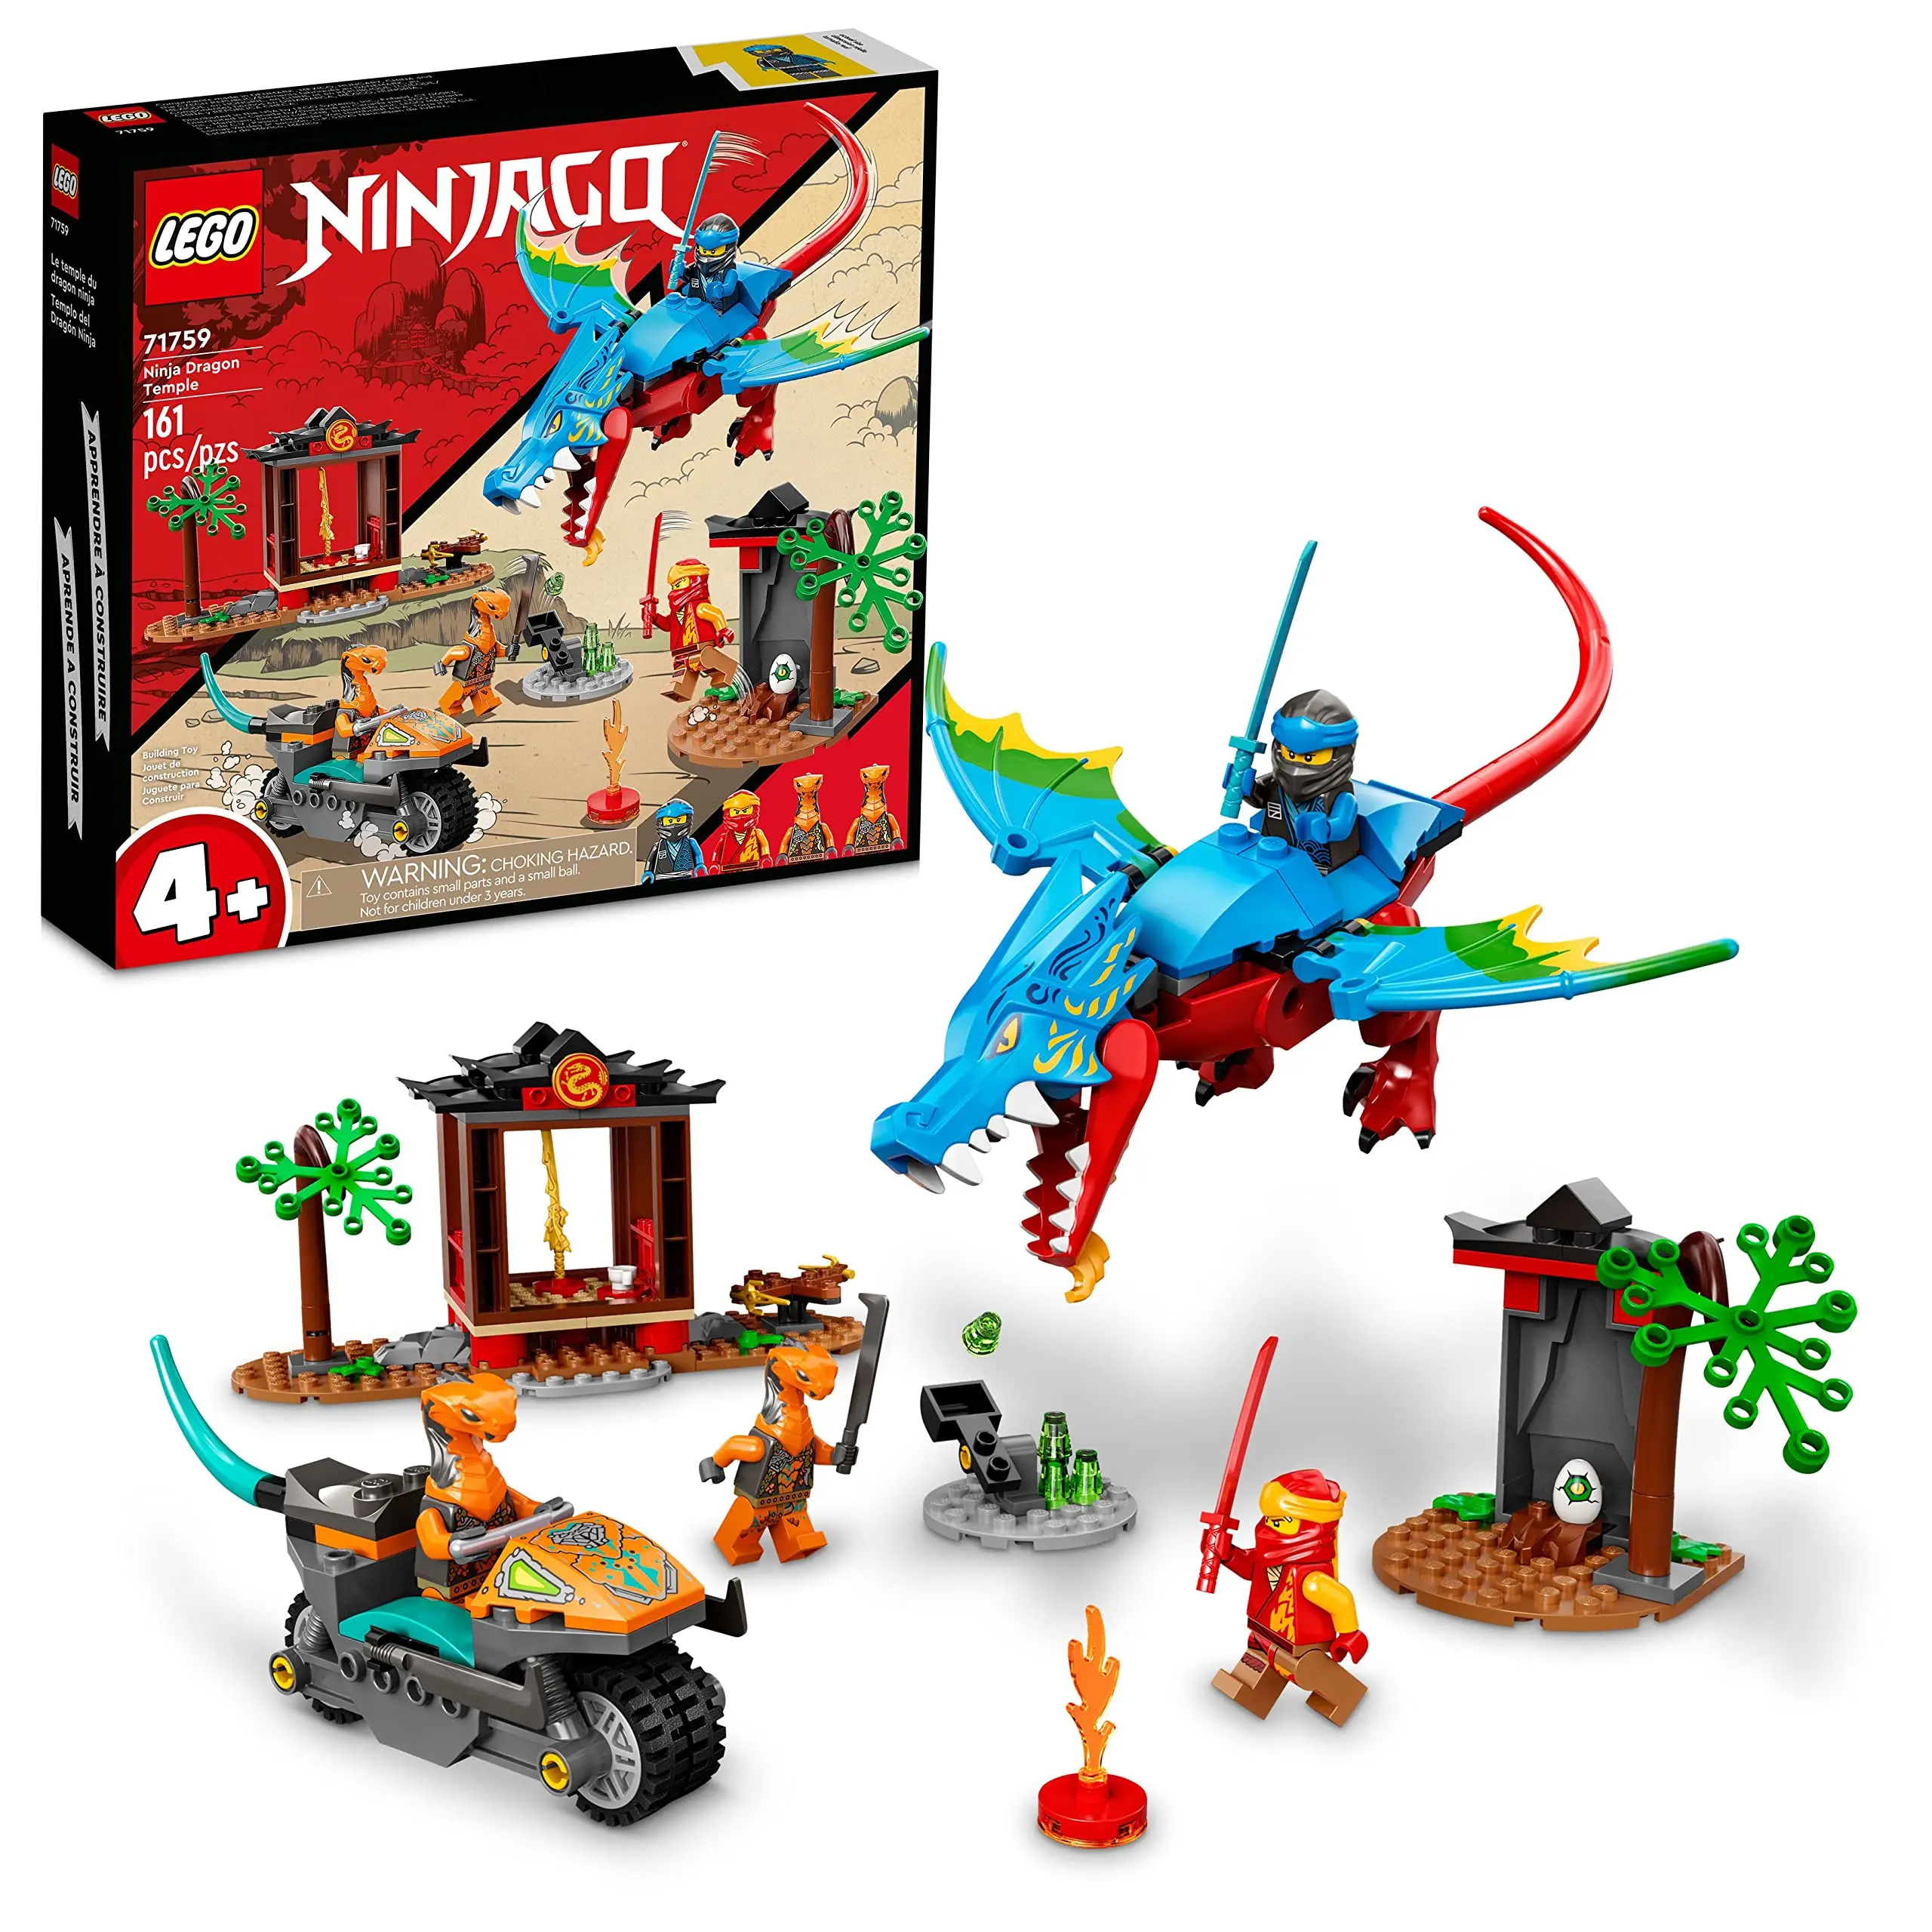 

LEGO NINJAGO Ninja Dragon Temple Set 71759 with Toy Motorcycle, Kai, NYA and Snake Warrior Minifigures, Gift for Kids